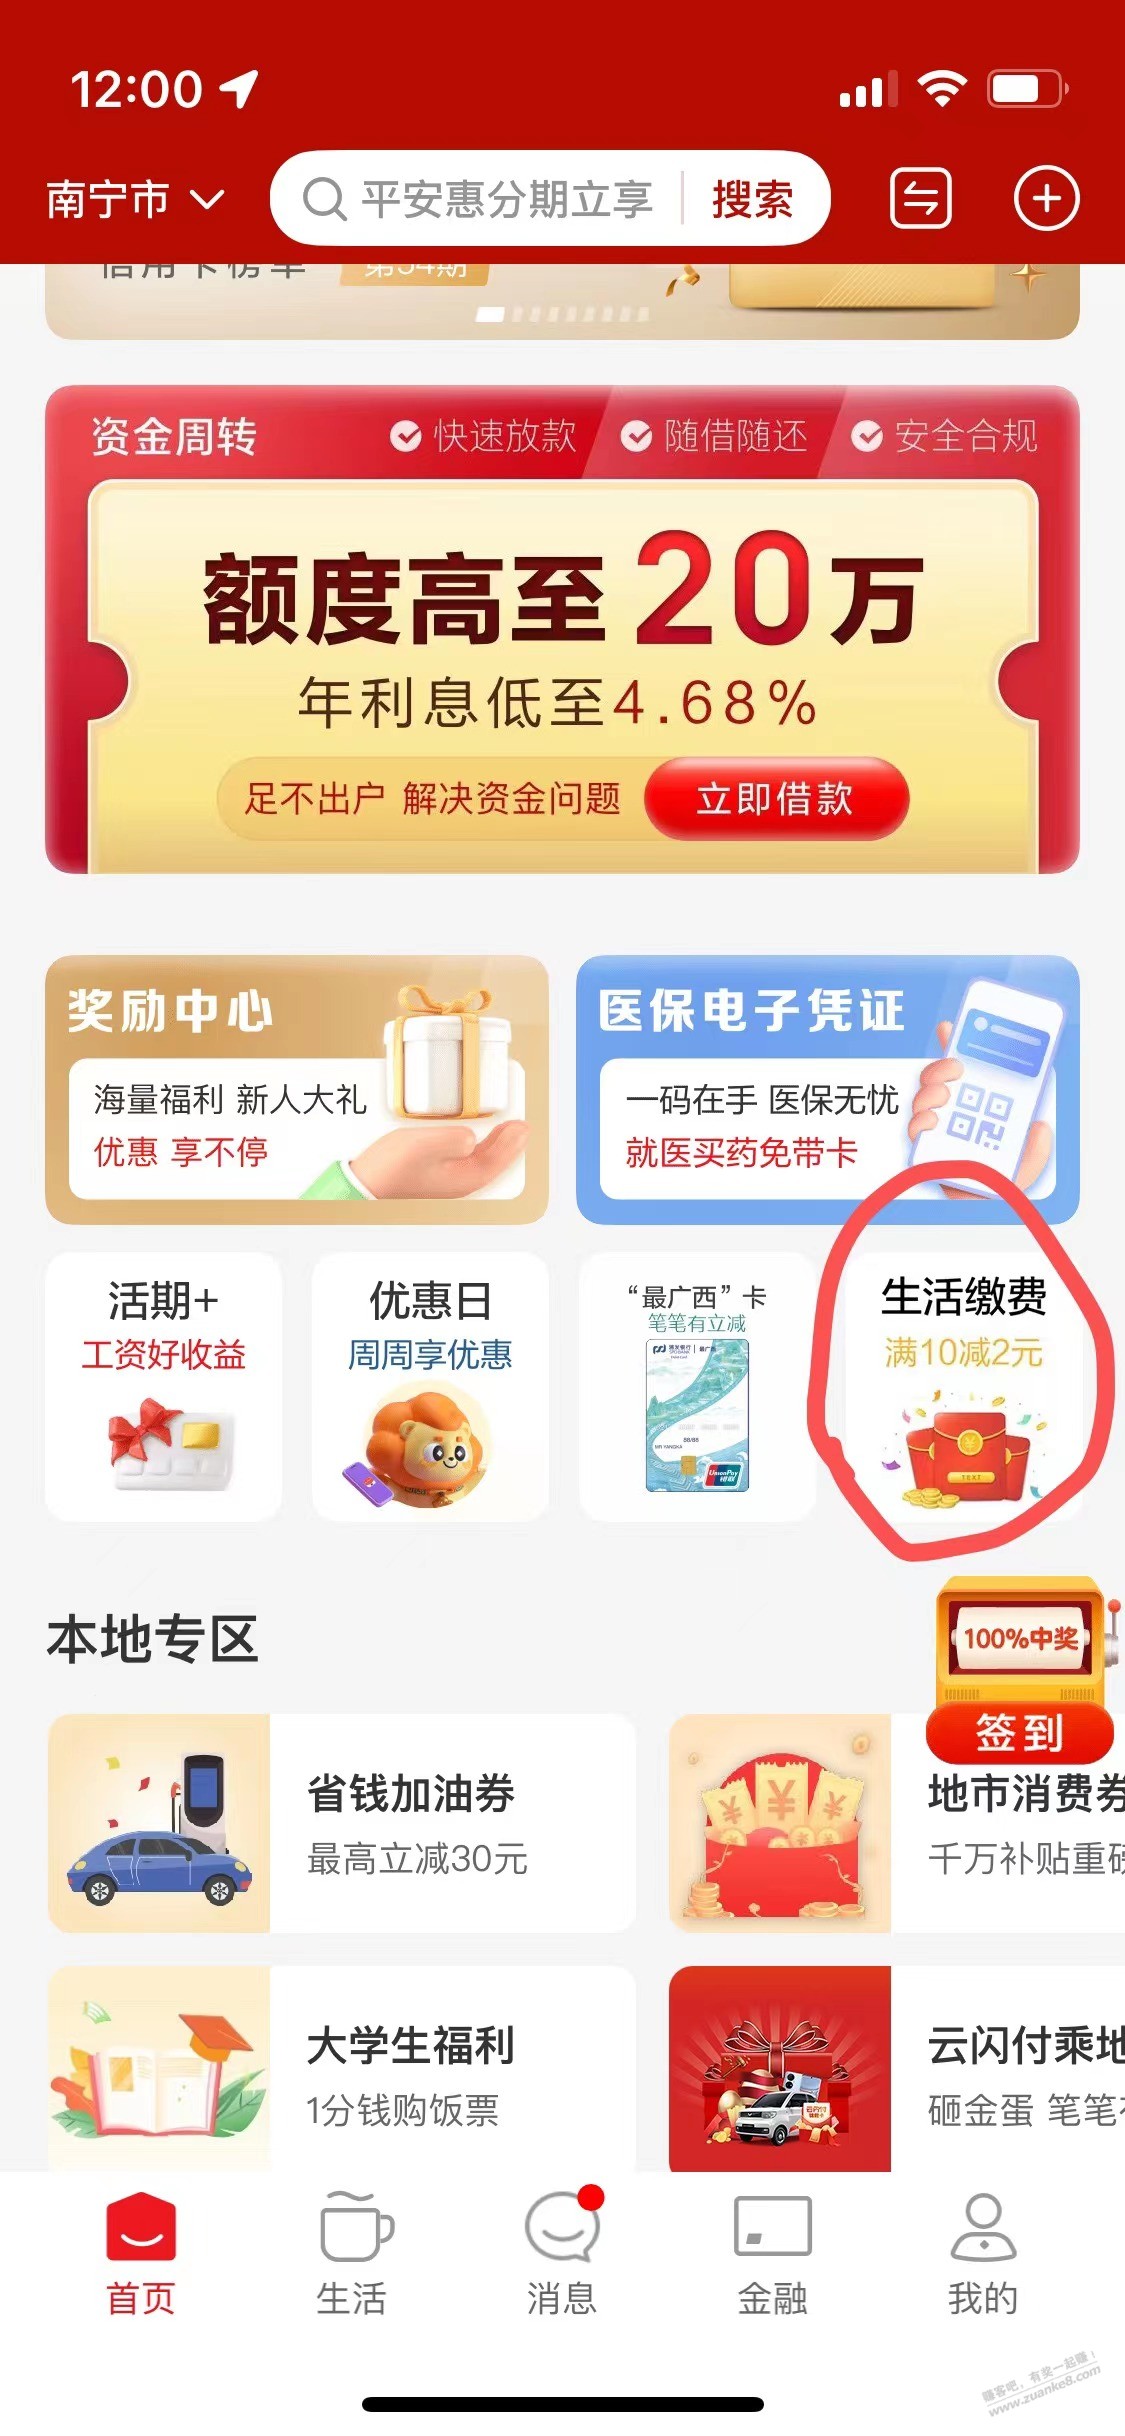 广西云闪付生活缴费10-2-惠小助(52huixz.com)